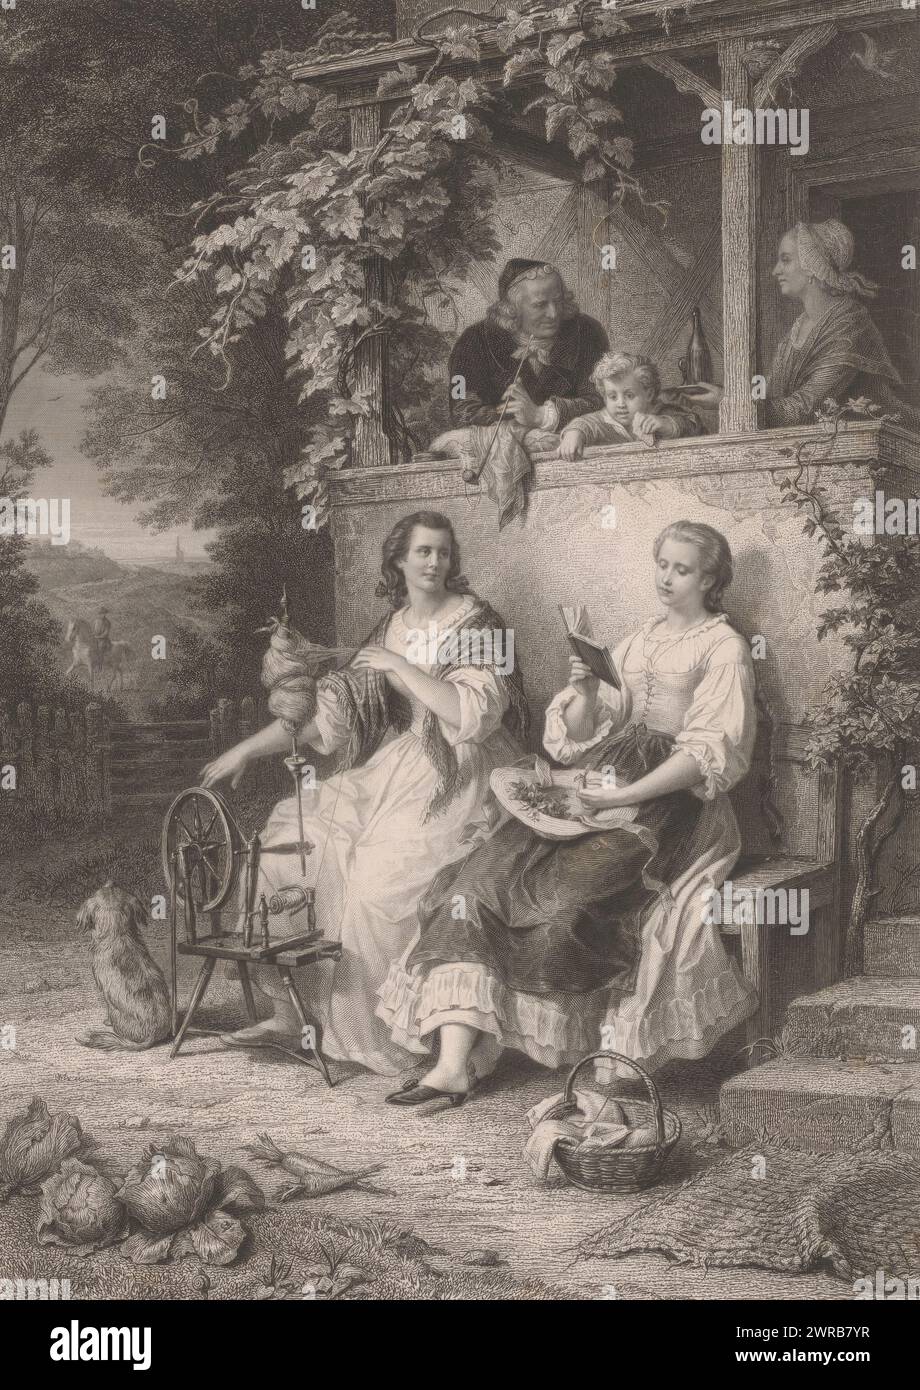 Friederike est assis devant la maison avec sa famille, ronronnant, imprimeur : Albrecht Schultheiss, après peinture par : Wilhelm von Kaulbach, 1866, papier, gravure, hauteur 427 mm × largeur 360 mm, impression Banque D'Images